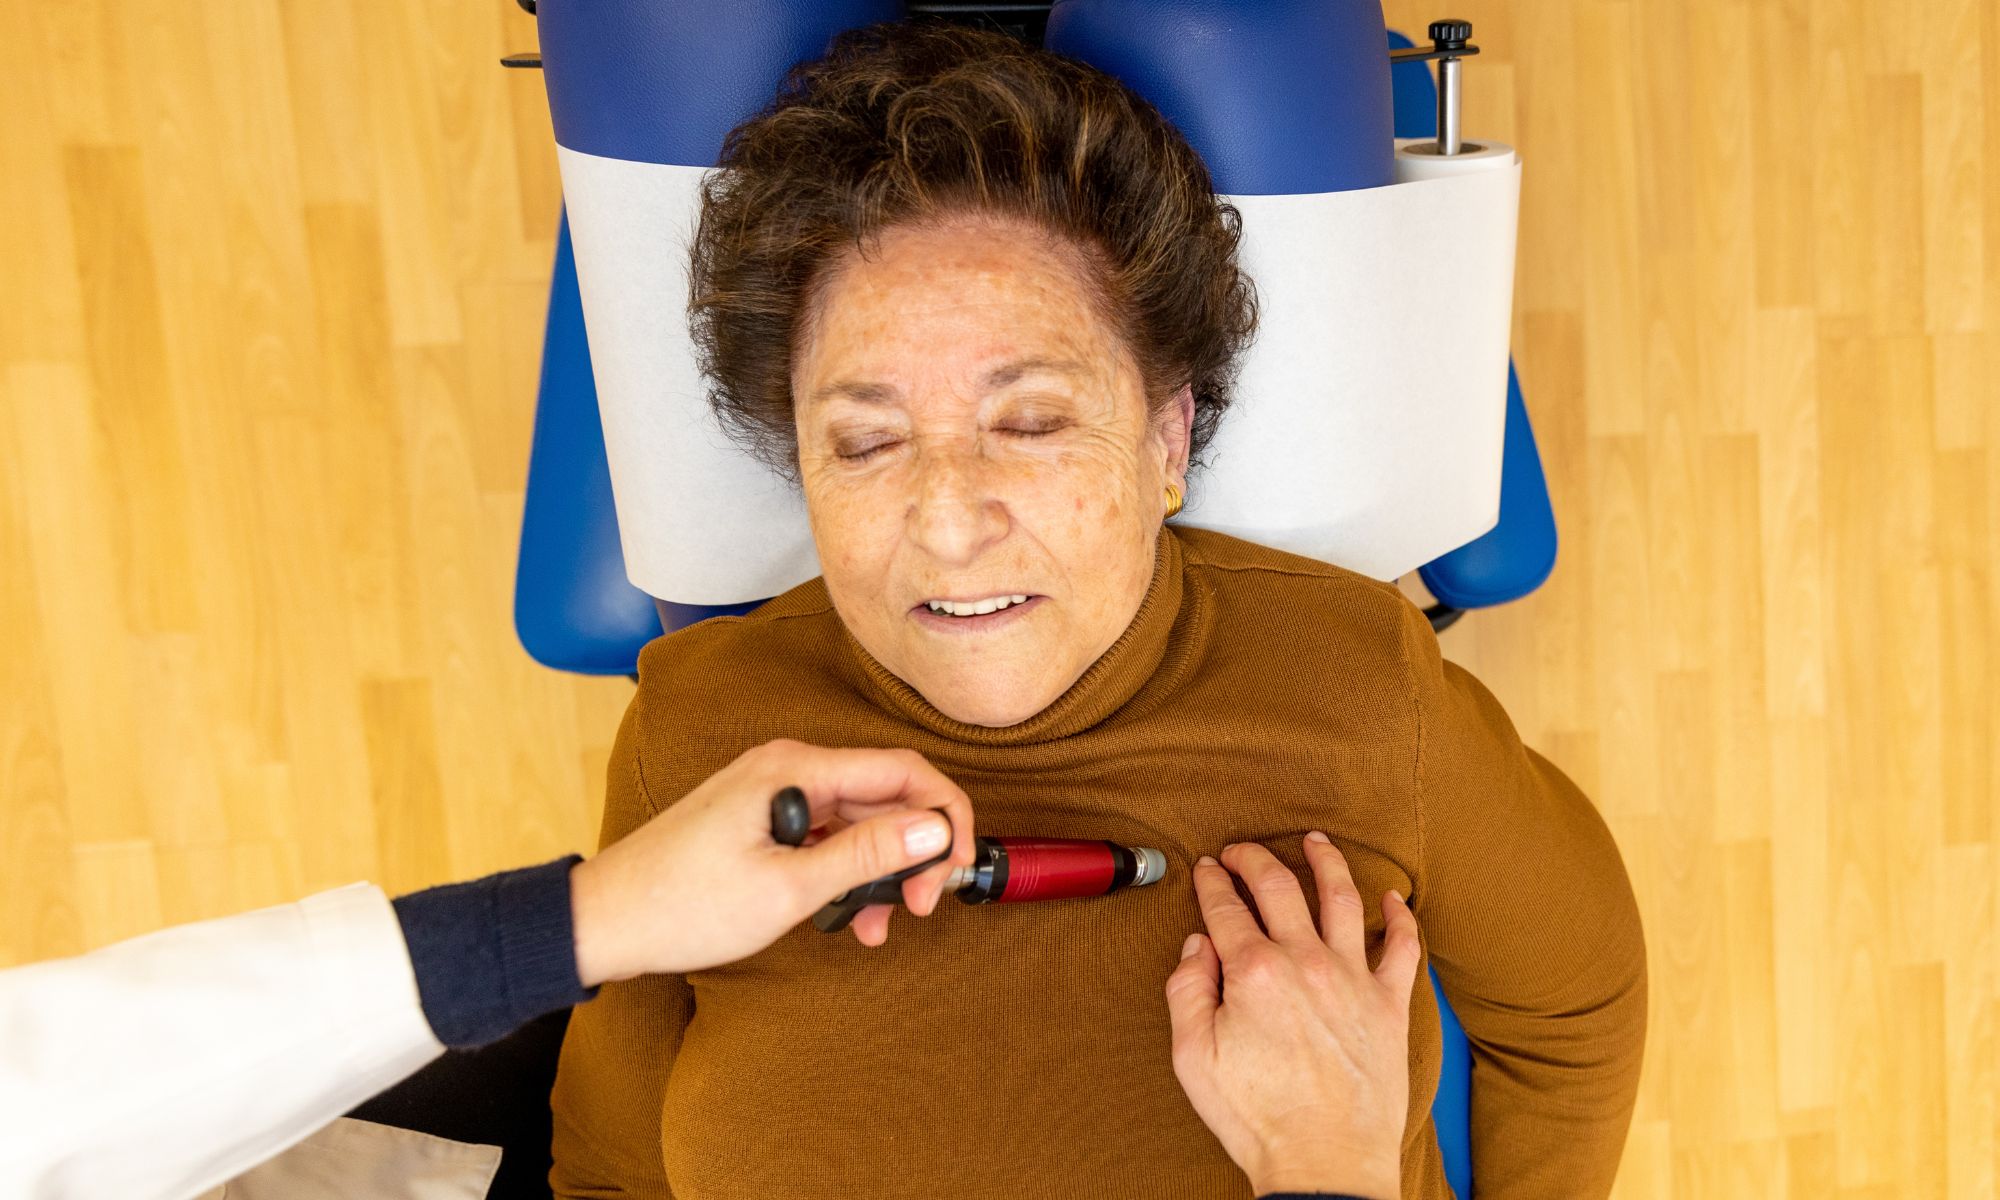 Ajuste de Quiropráctica en personas mayores con activador en clavícula por Eva Puig Arne